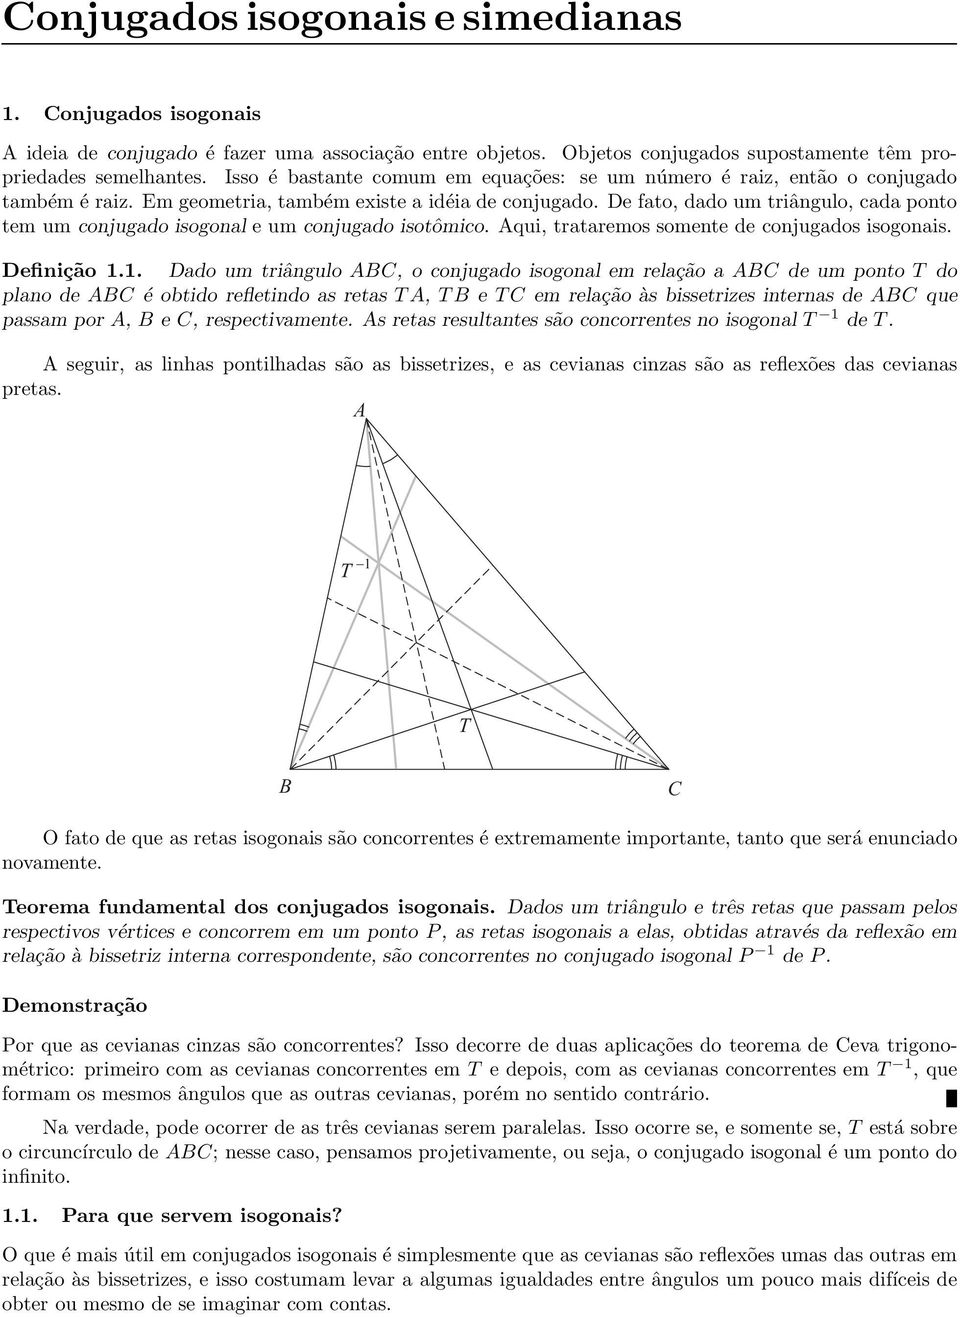 De fato, dado um triângulo, cada ponto tem um conjugado isogonal e um conjugado isotômico. Aqui, trataremos somente de conjugados isogonais. Definição 1.